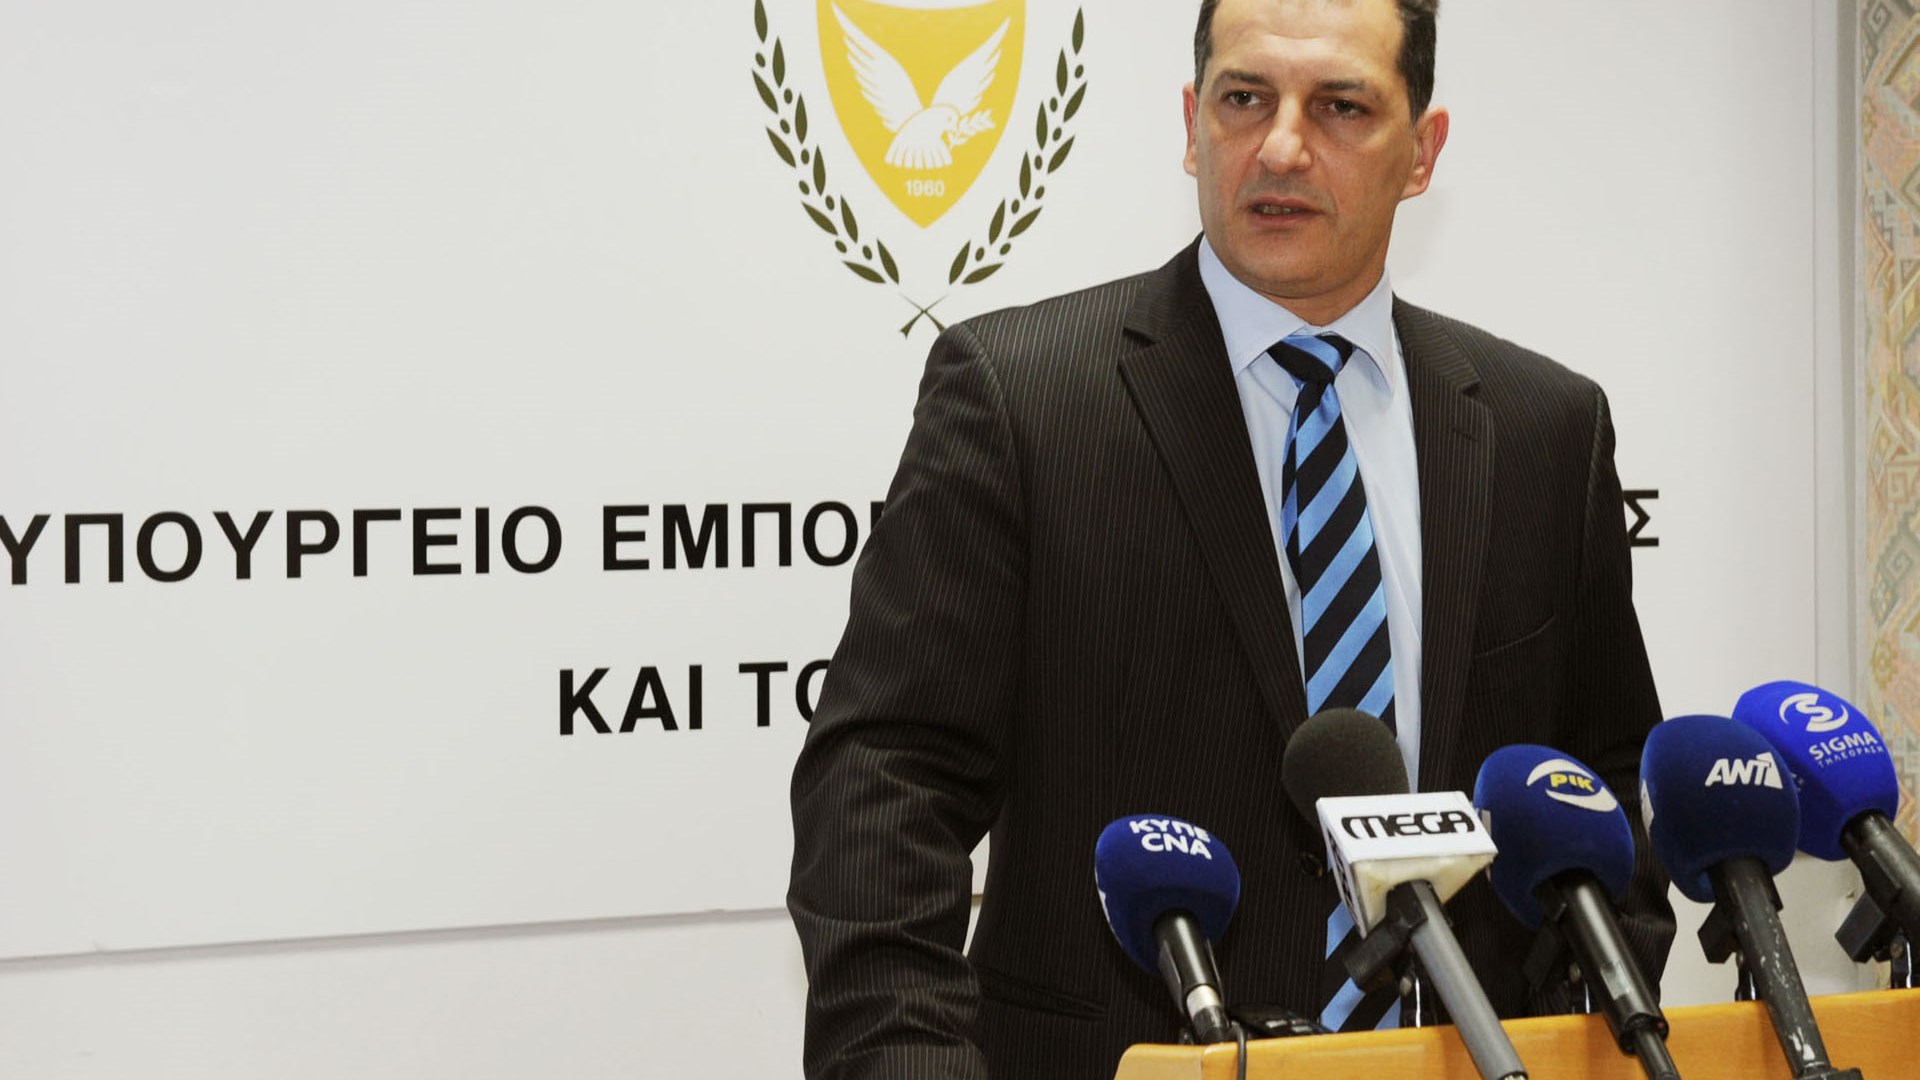 Ο υπουργός Ενέργειας της Κύπρου στον Realfm 97,8: Για να γίνει θερμό επεισόδιο στη γεώτρηση, χρειάζονται δύο